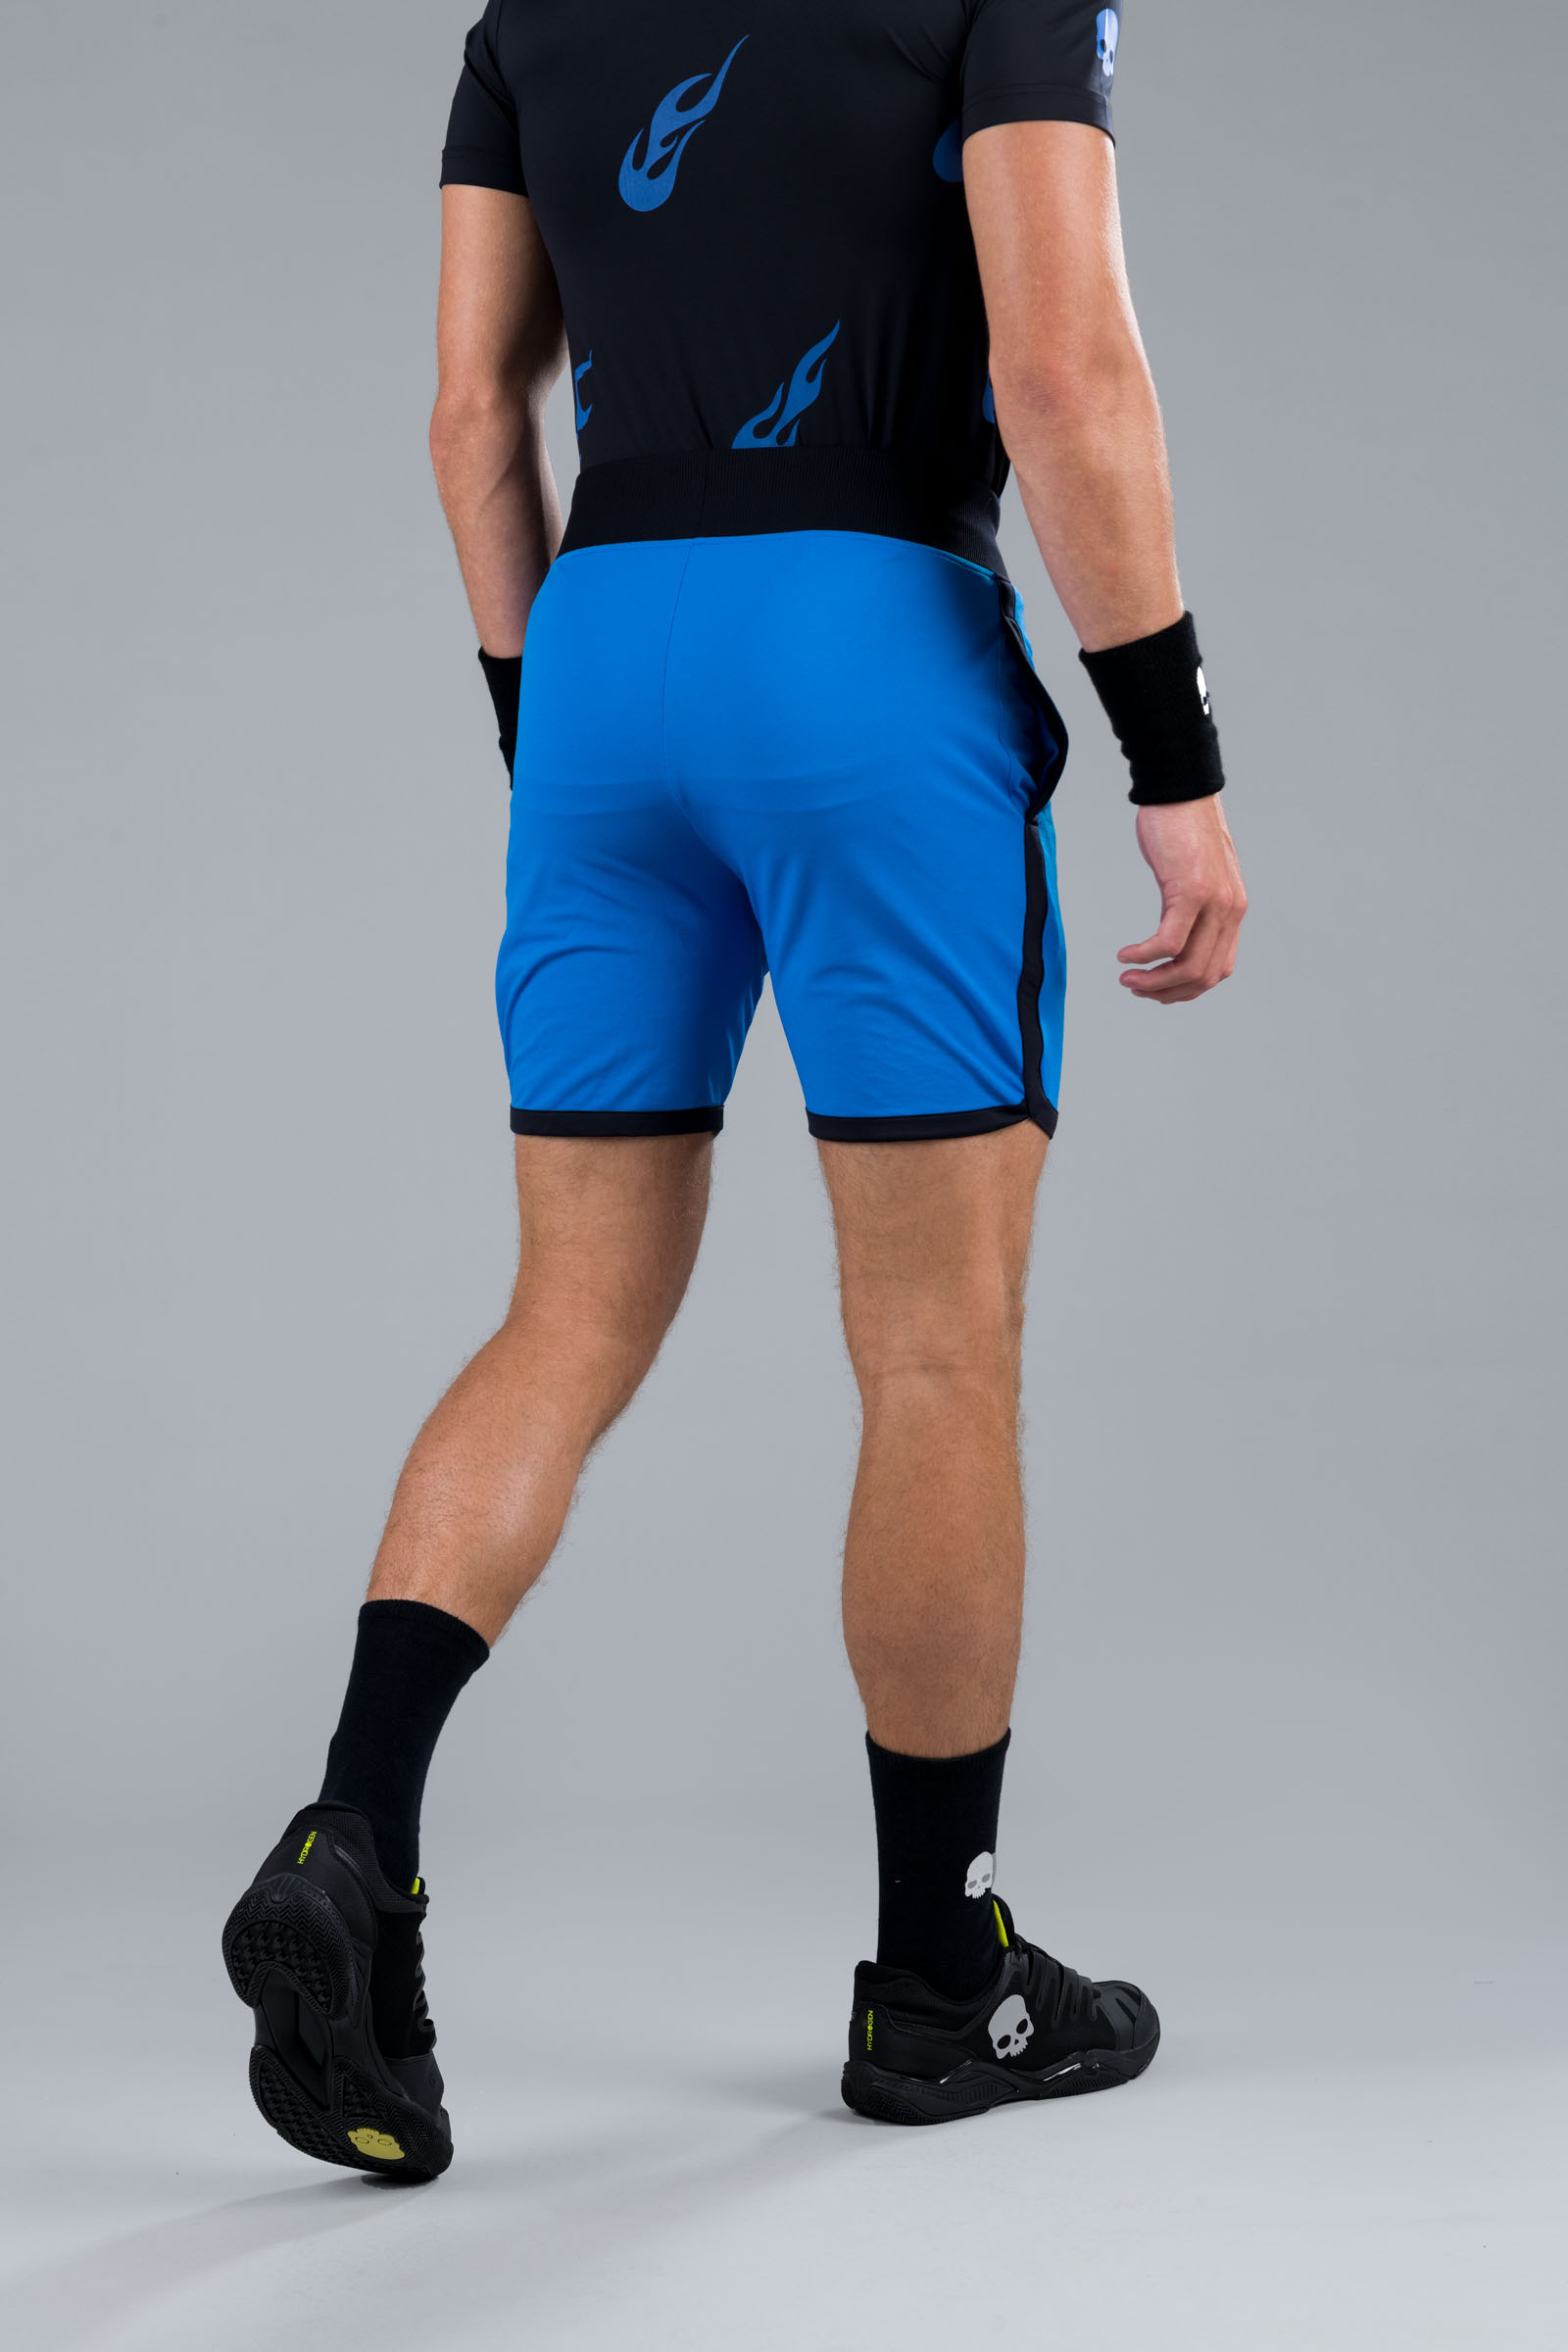 TECH SHORTS - BLUETTE - Abbigliamento sportivo | Hydrogen